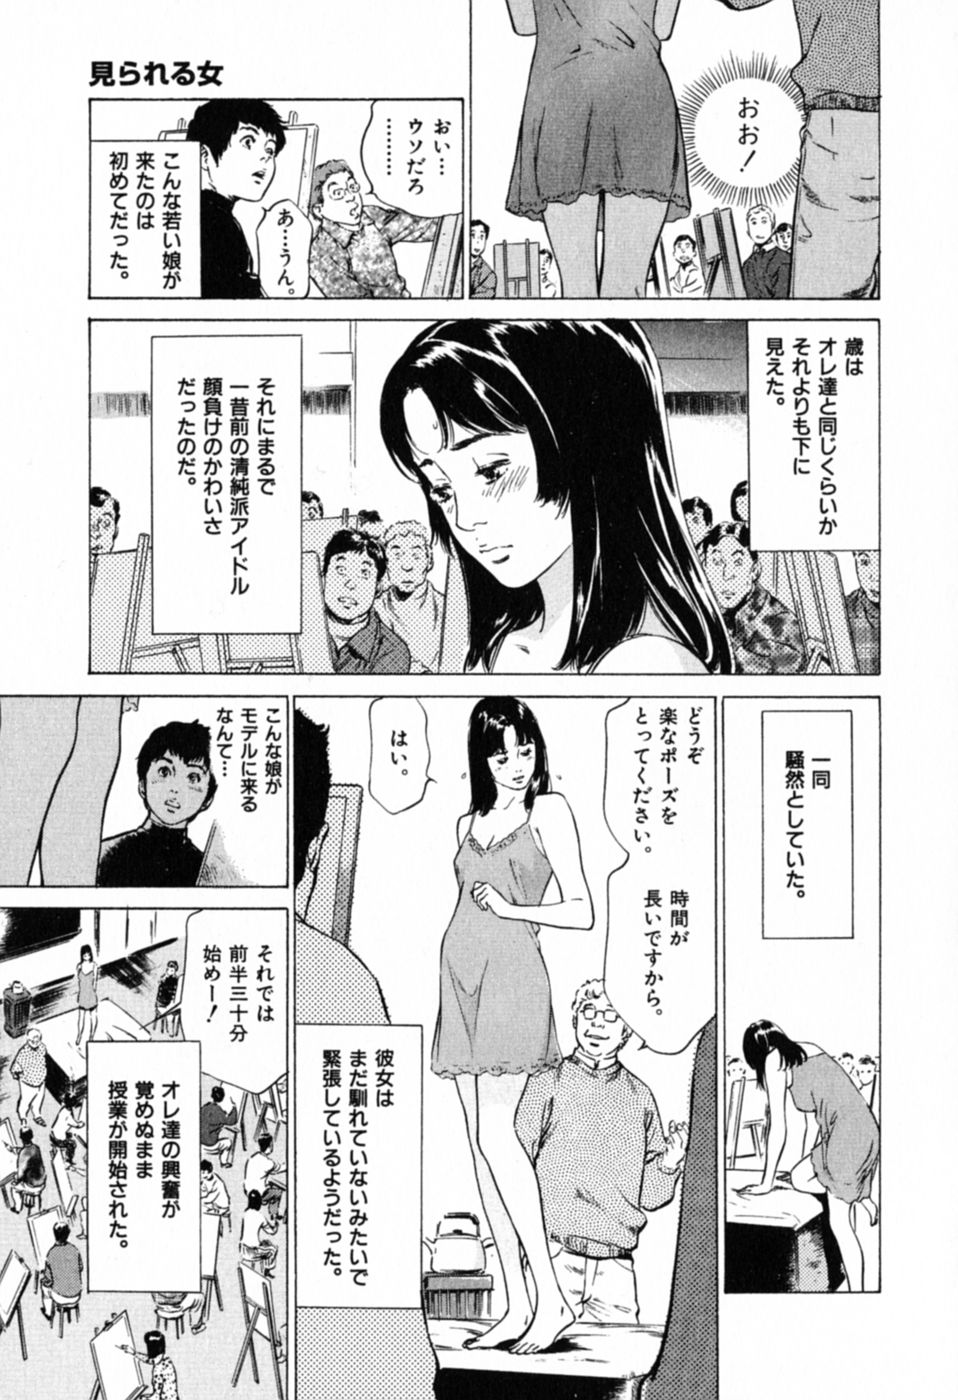 [Hazuki Kaoru] Hontou ni Atta H na Taiken Oshiemasu Vol.1 page 27 full